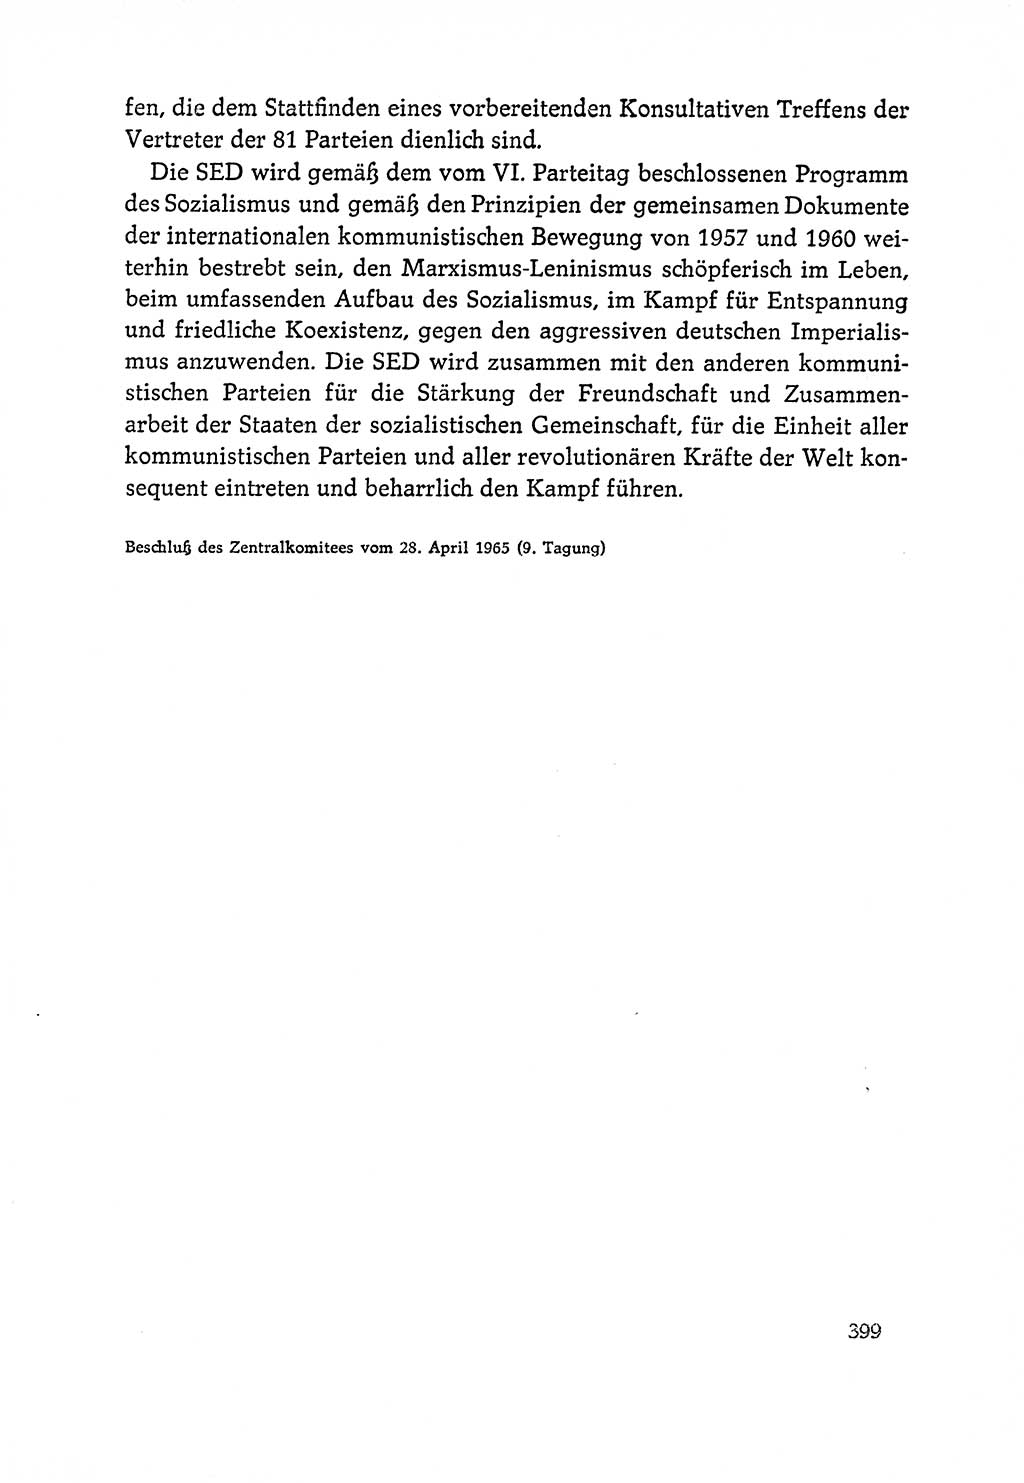 Dokumente der Sozialistischen Einheitspartei Deutschlands (SED) [Deutsche Demokratische Republik (DDR)] 1964-1965, Seite 399 (Dok. SED DDR 1964-1965, S. 399)